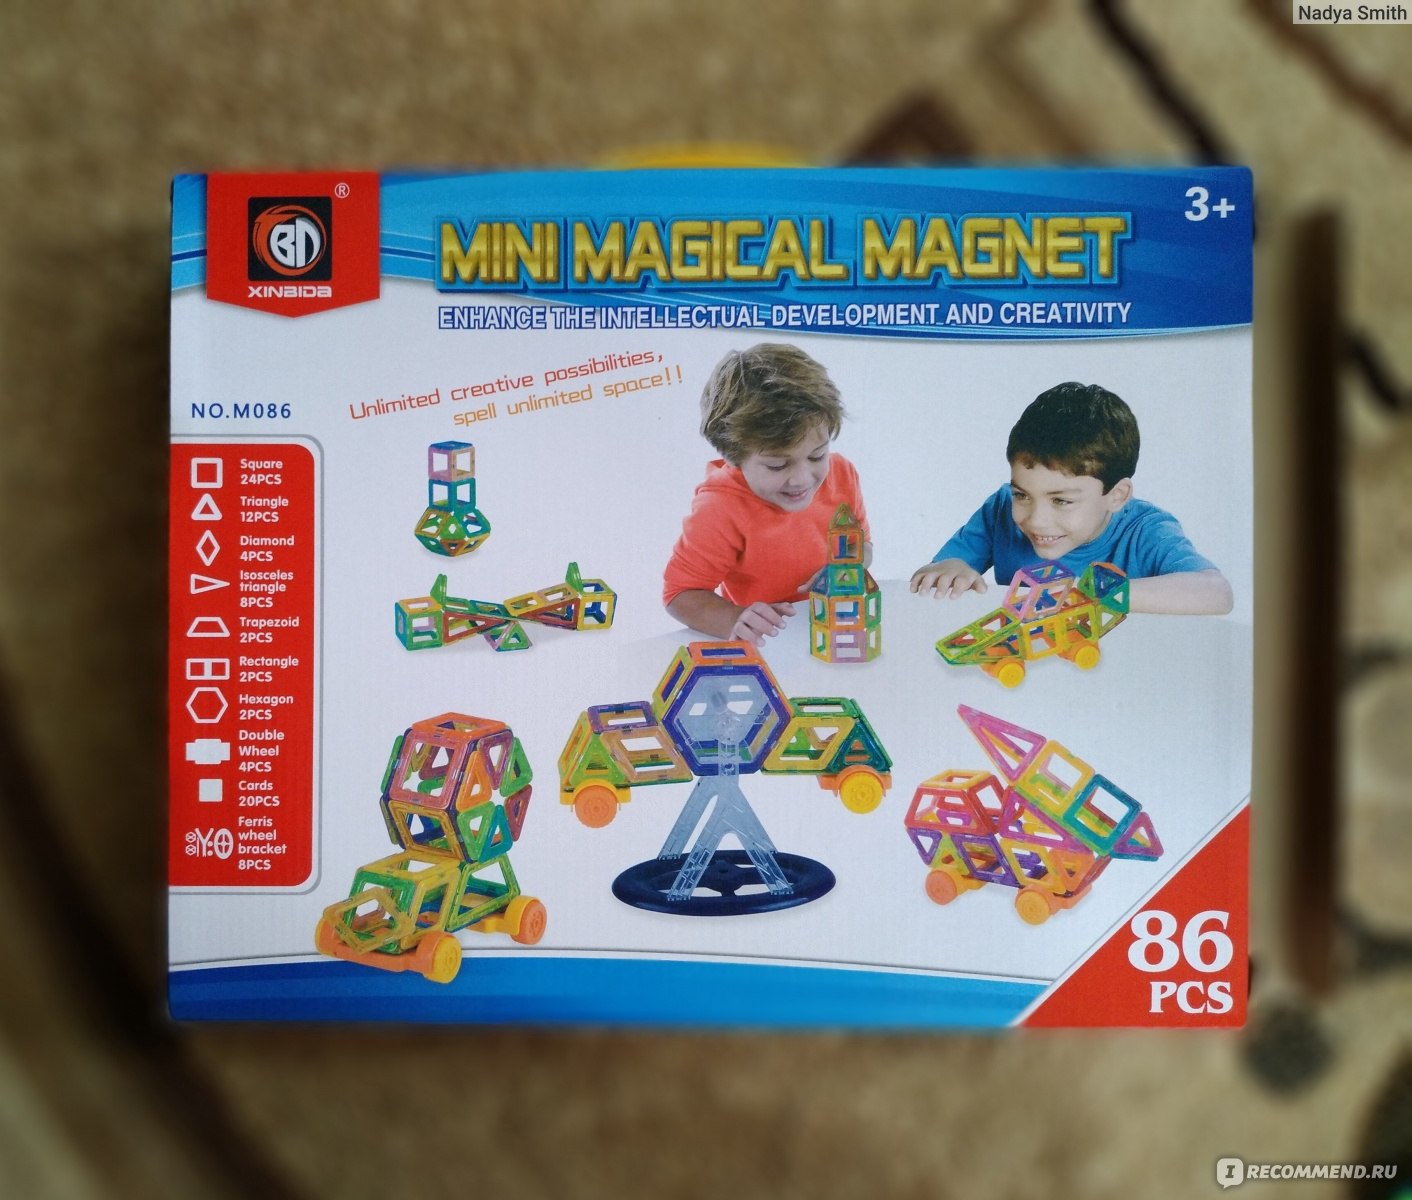 Магнитный конструктор Mini magical magnet - «Более доступный аналог  MAGFORMERS. Отличный качественный конструктор, который развивает мышление,  фантазию и определенно стоит своих денег. Понравится детям любых возрастов  - даже взрослые оценили. Наши ...